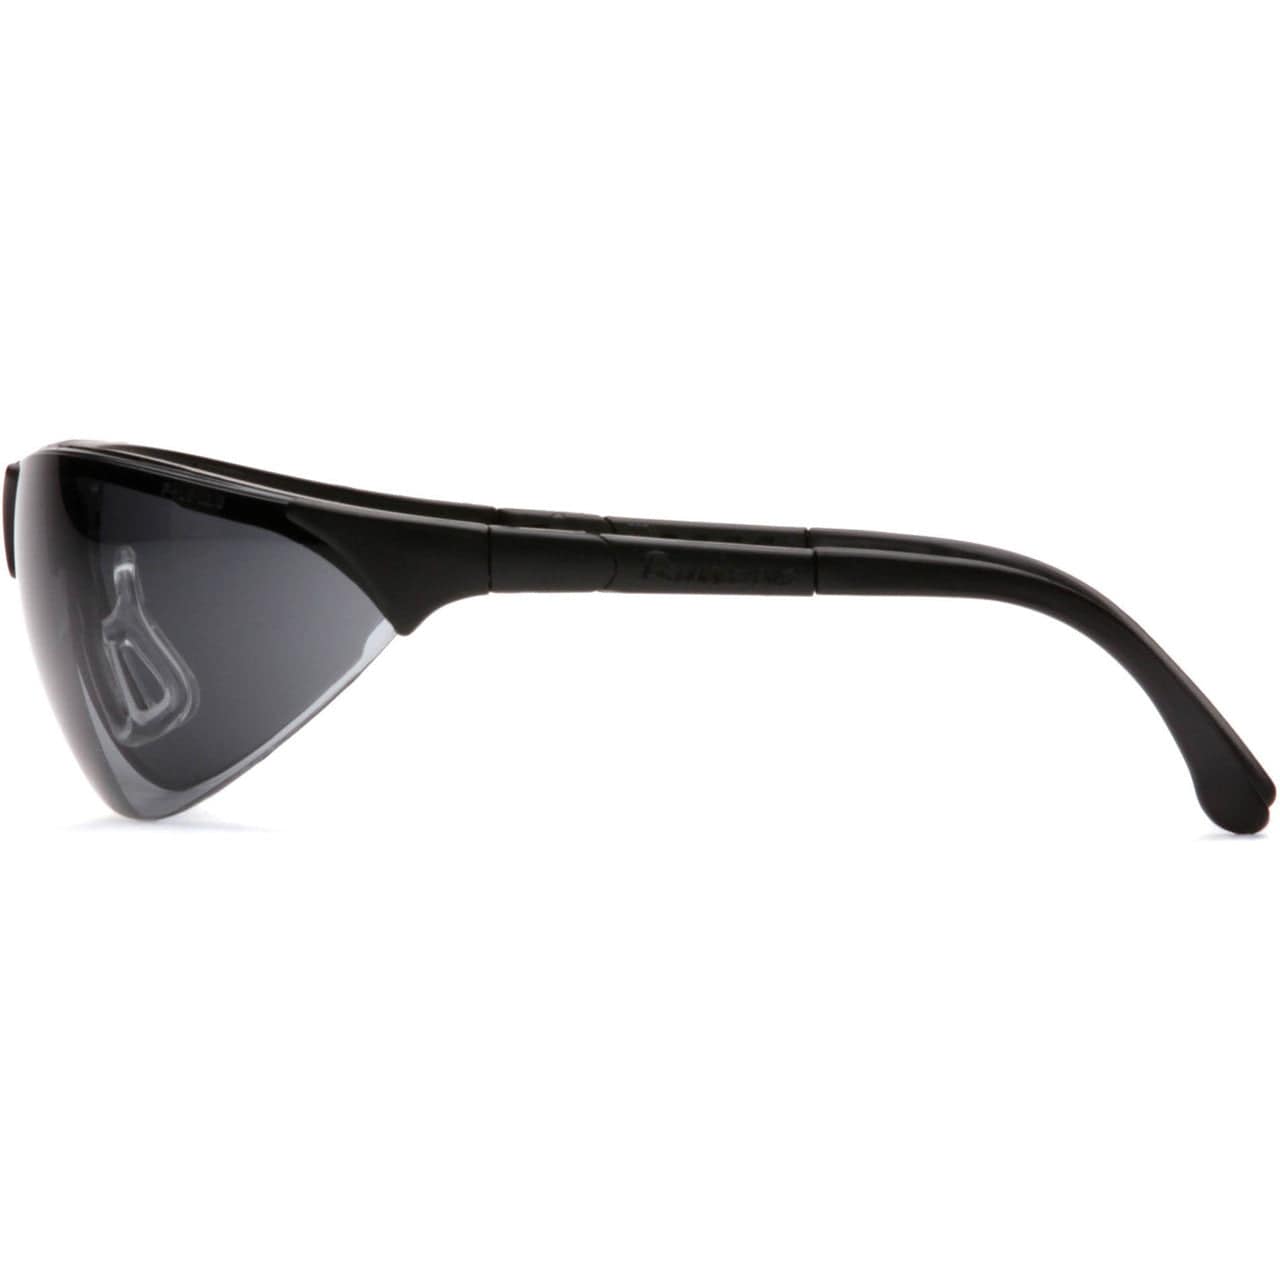 Pyramex Rendezvous Safety Glasses Black Frame Gray Lens SB2820S Side